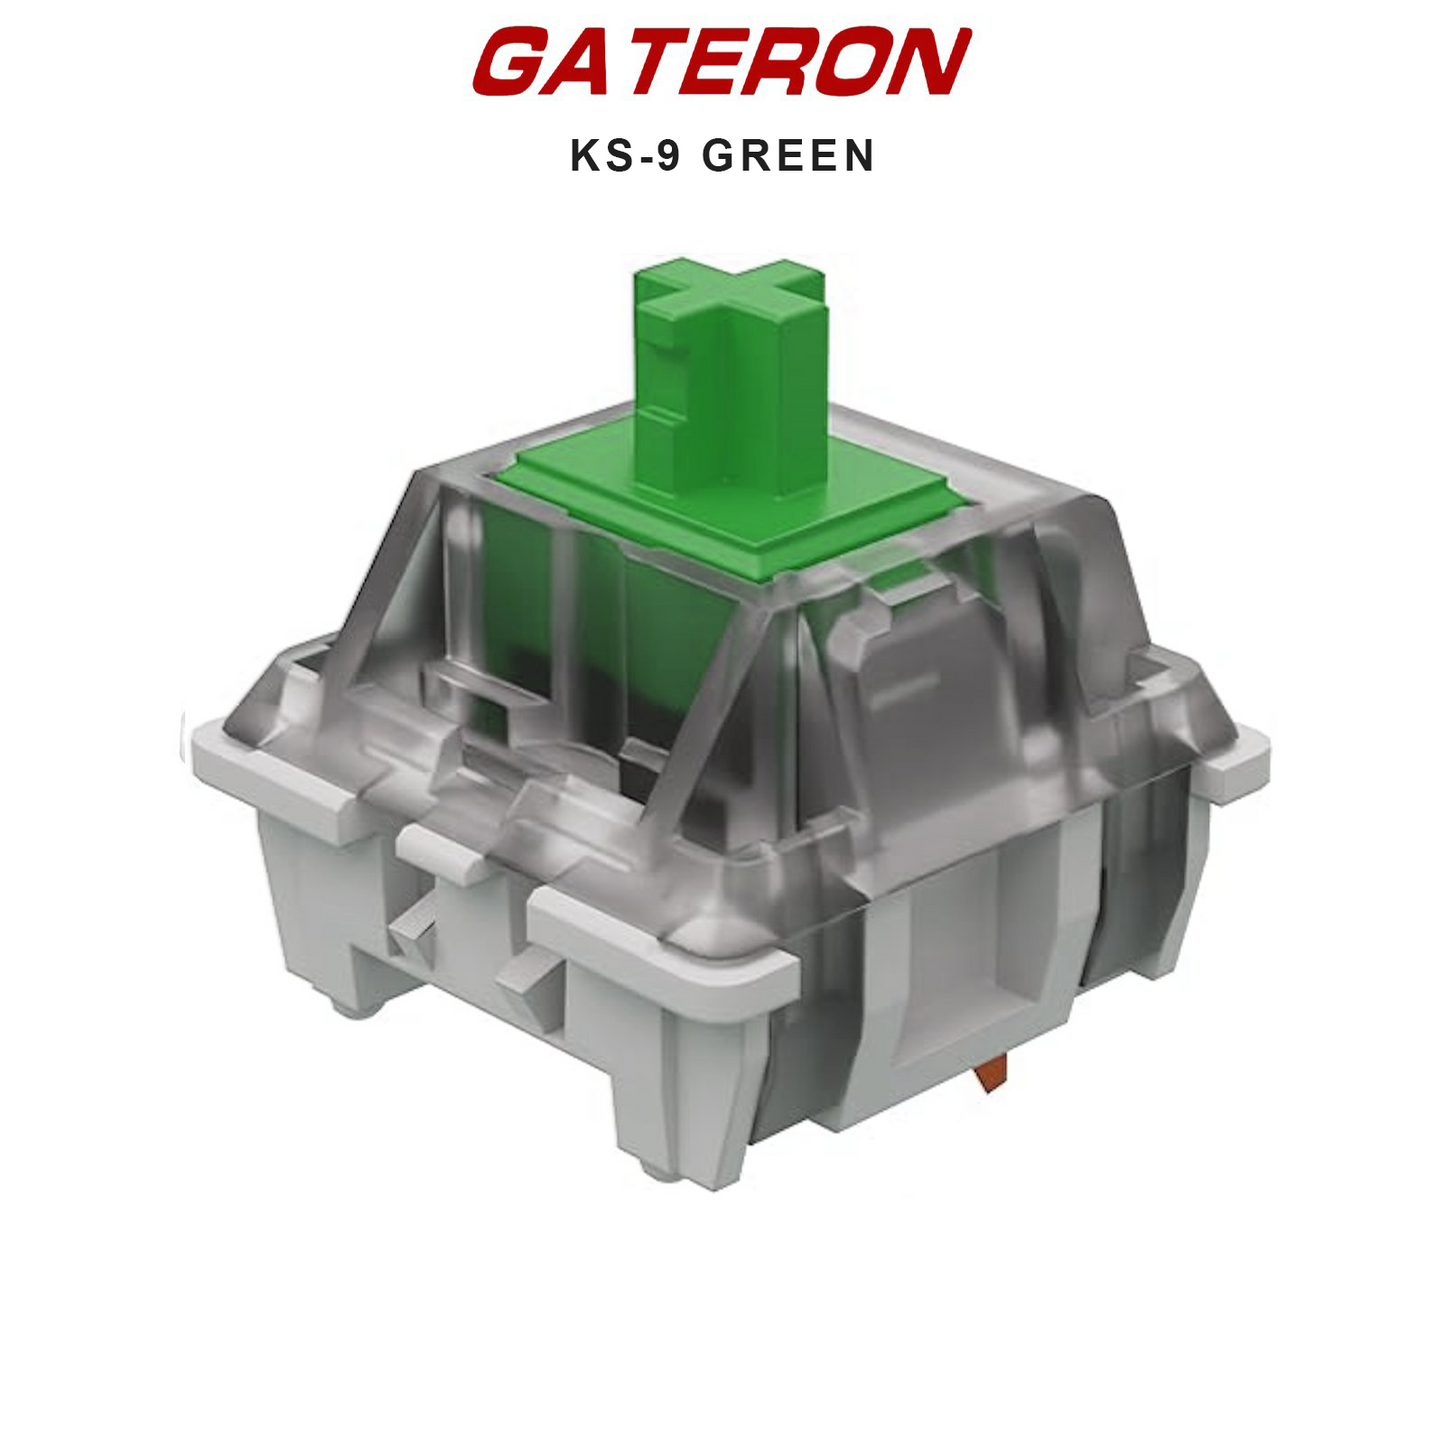 Gateron KS-9 Switches